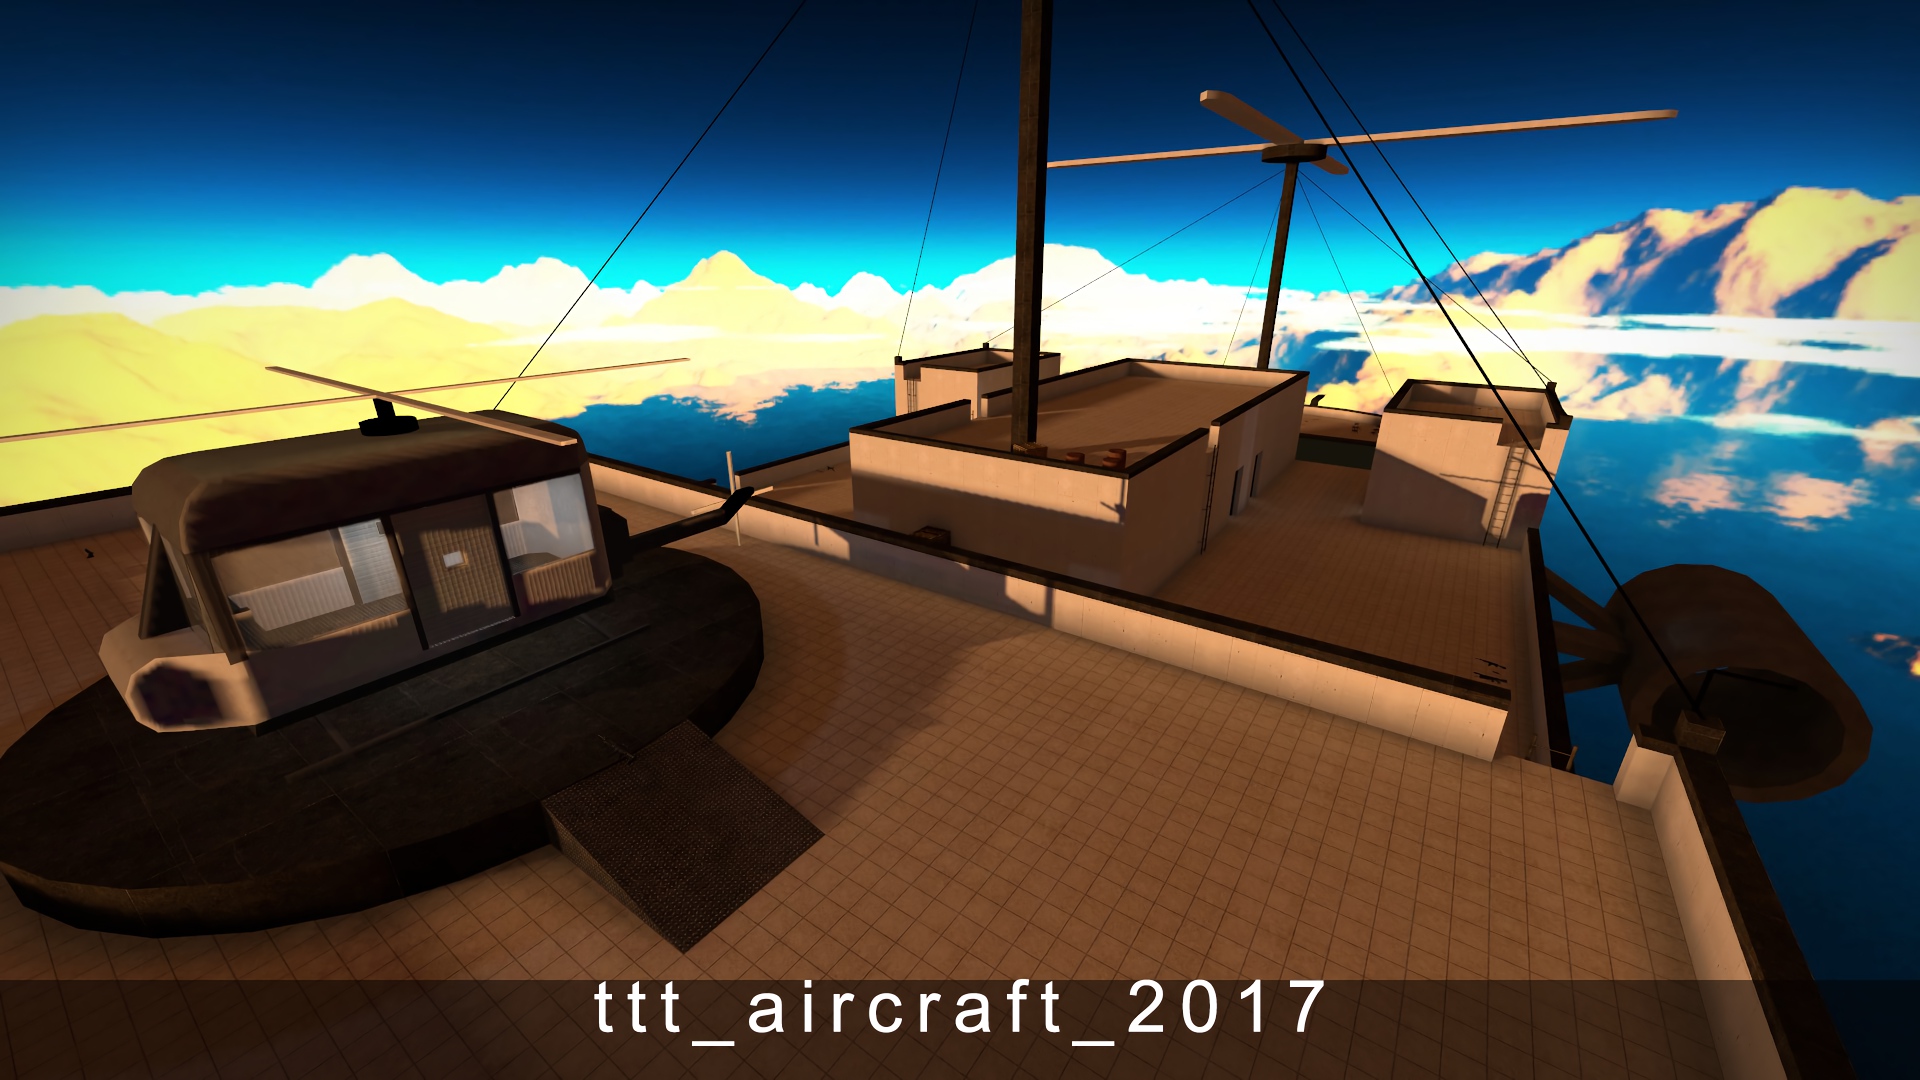 ttt_aircraft_2017.jpg